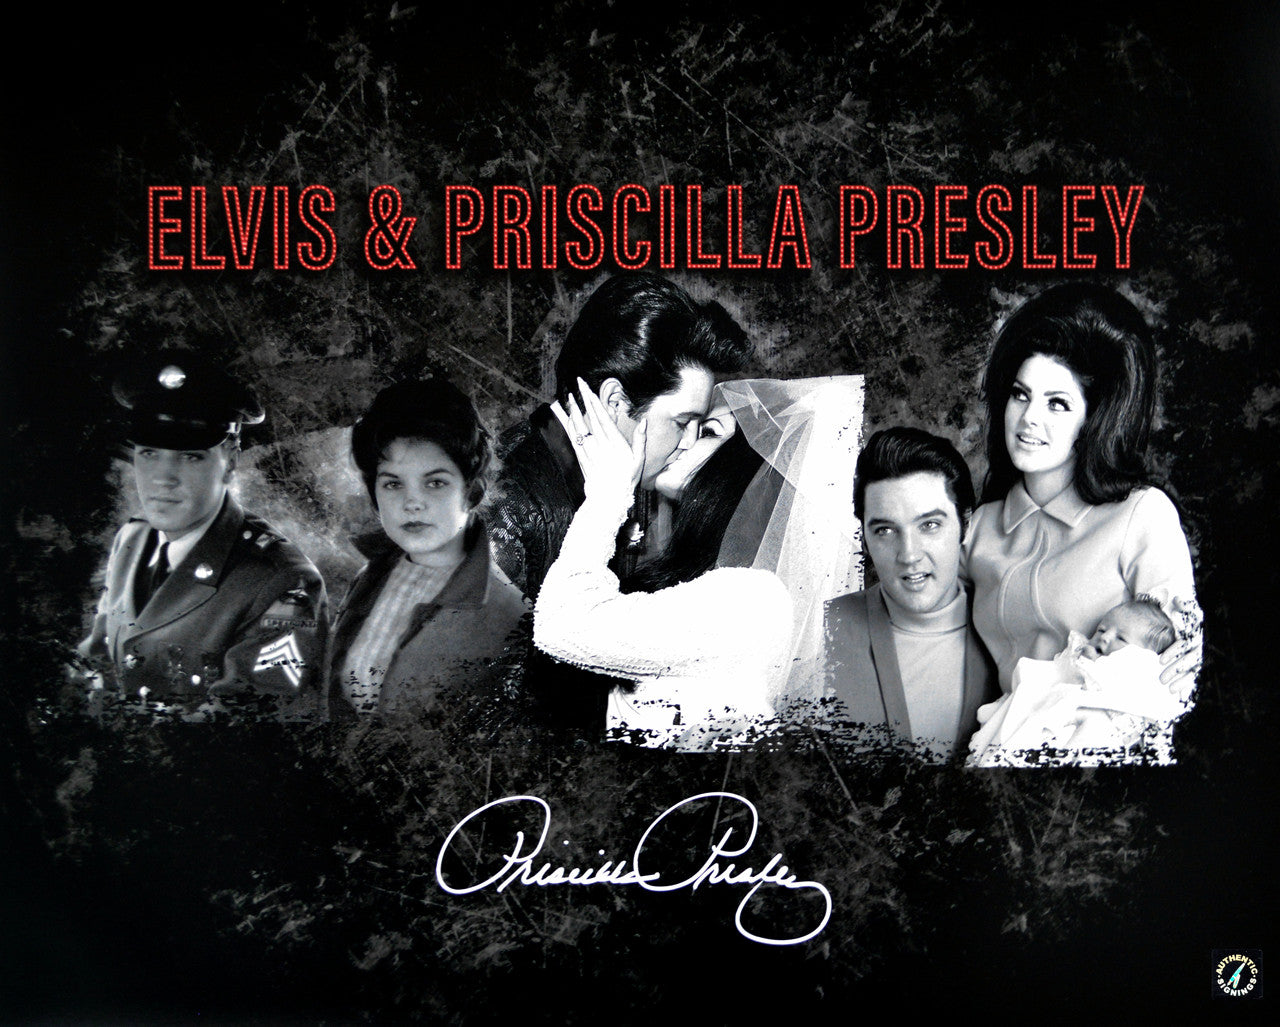 Priscilla Presley Autographed Collage with Elvis Presley 16x20 Photo